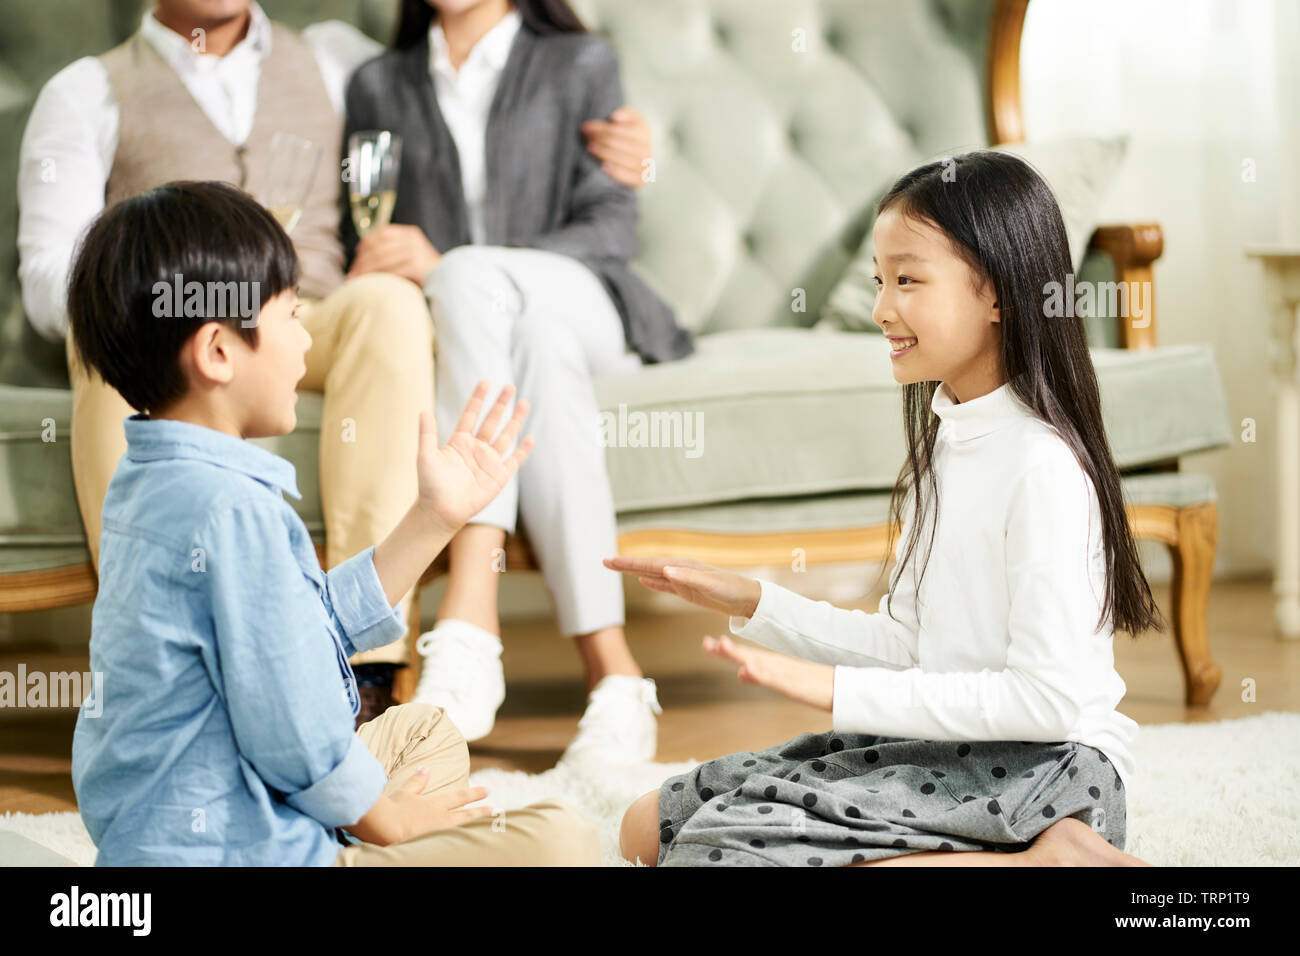 Frère et soeur asiatique assis sur un tapis de jouer pendant que les parents regardent en arrière-plan Banque D'Images